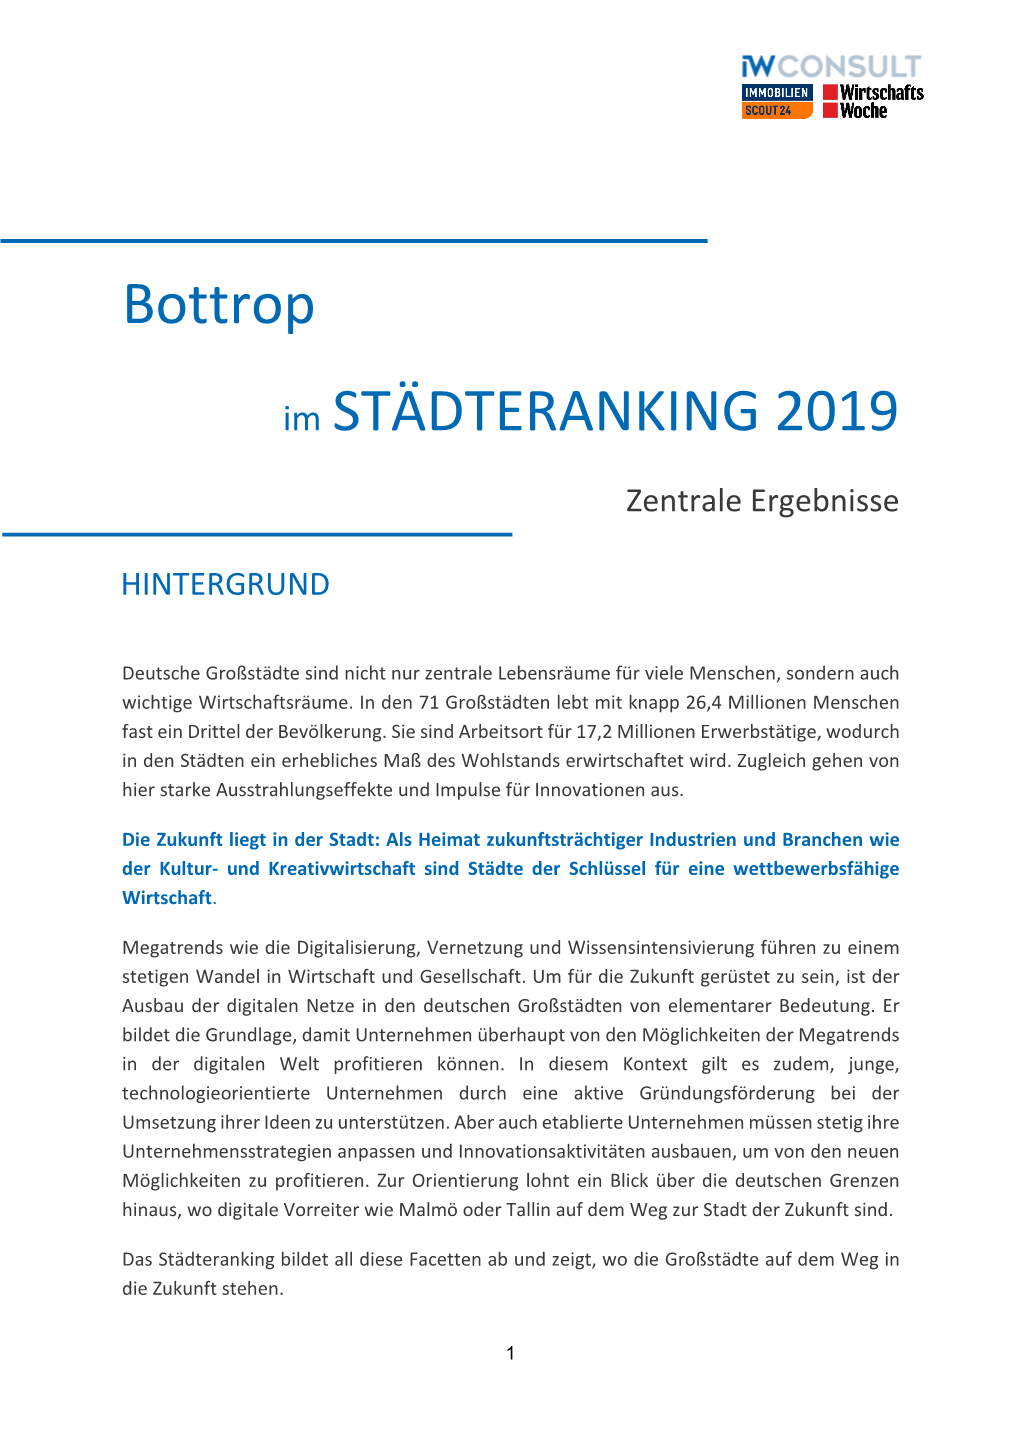 Bottrop Im STÄDTERANKING 2019